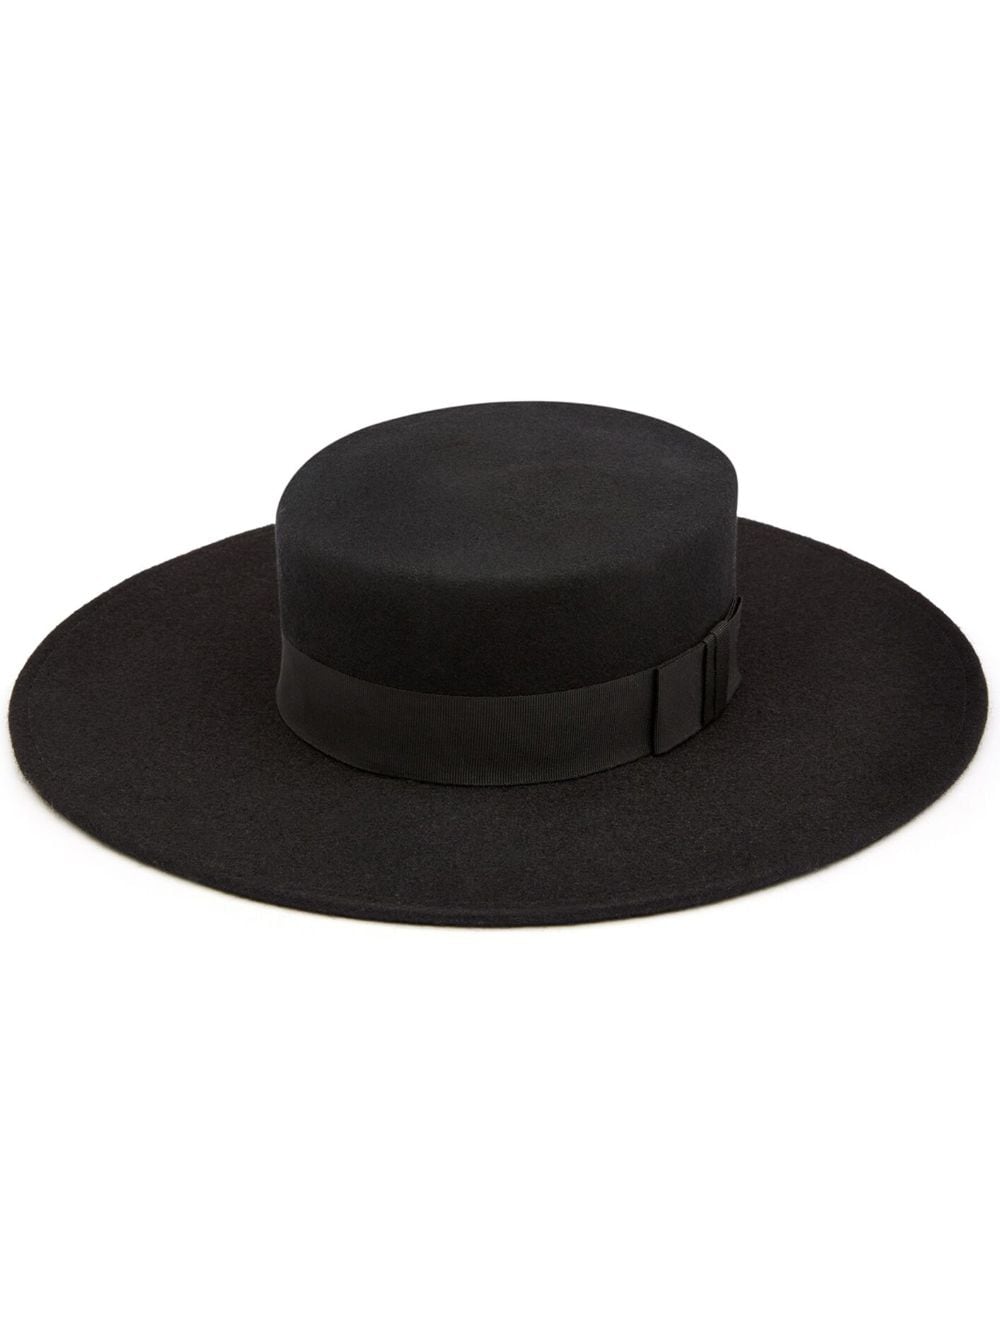 Nina Ricci bow-embellished boater hat - Black von Nina Ricci